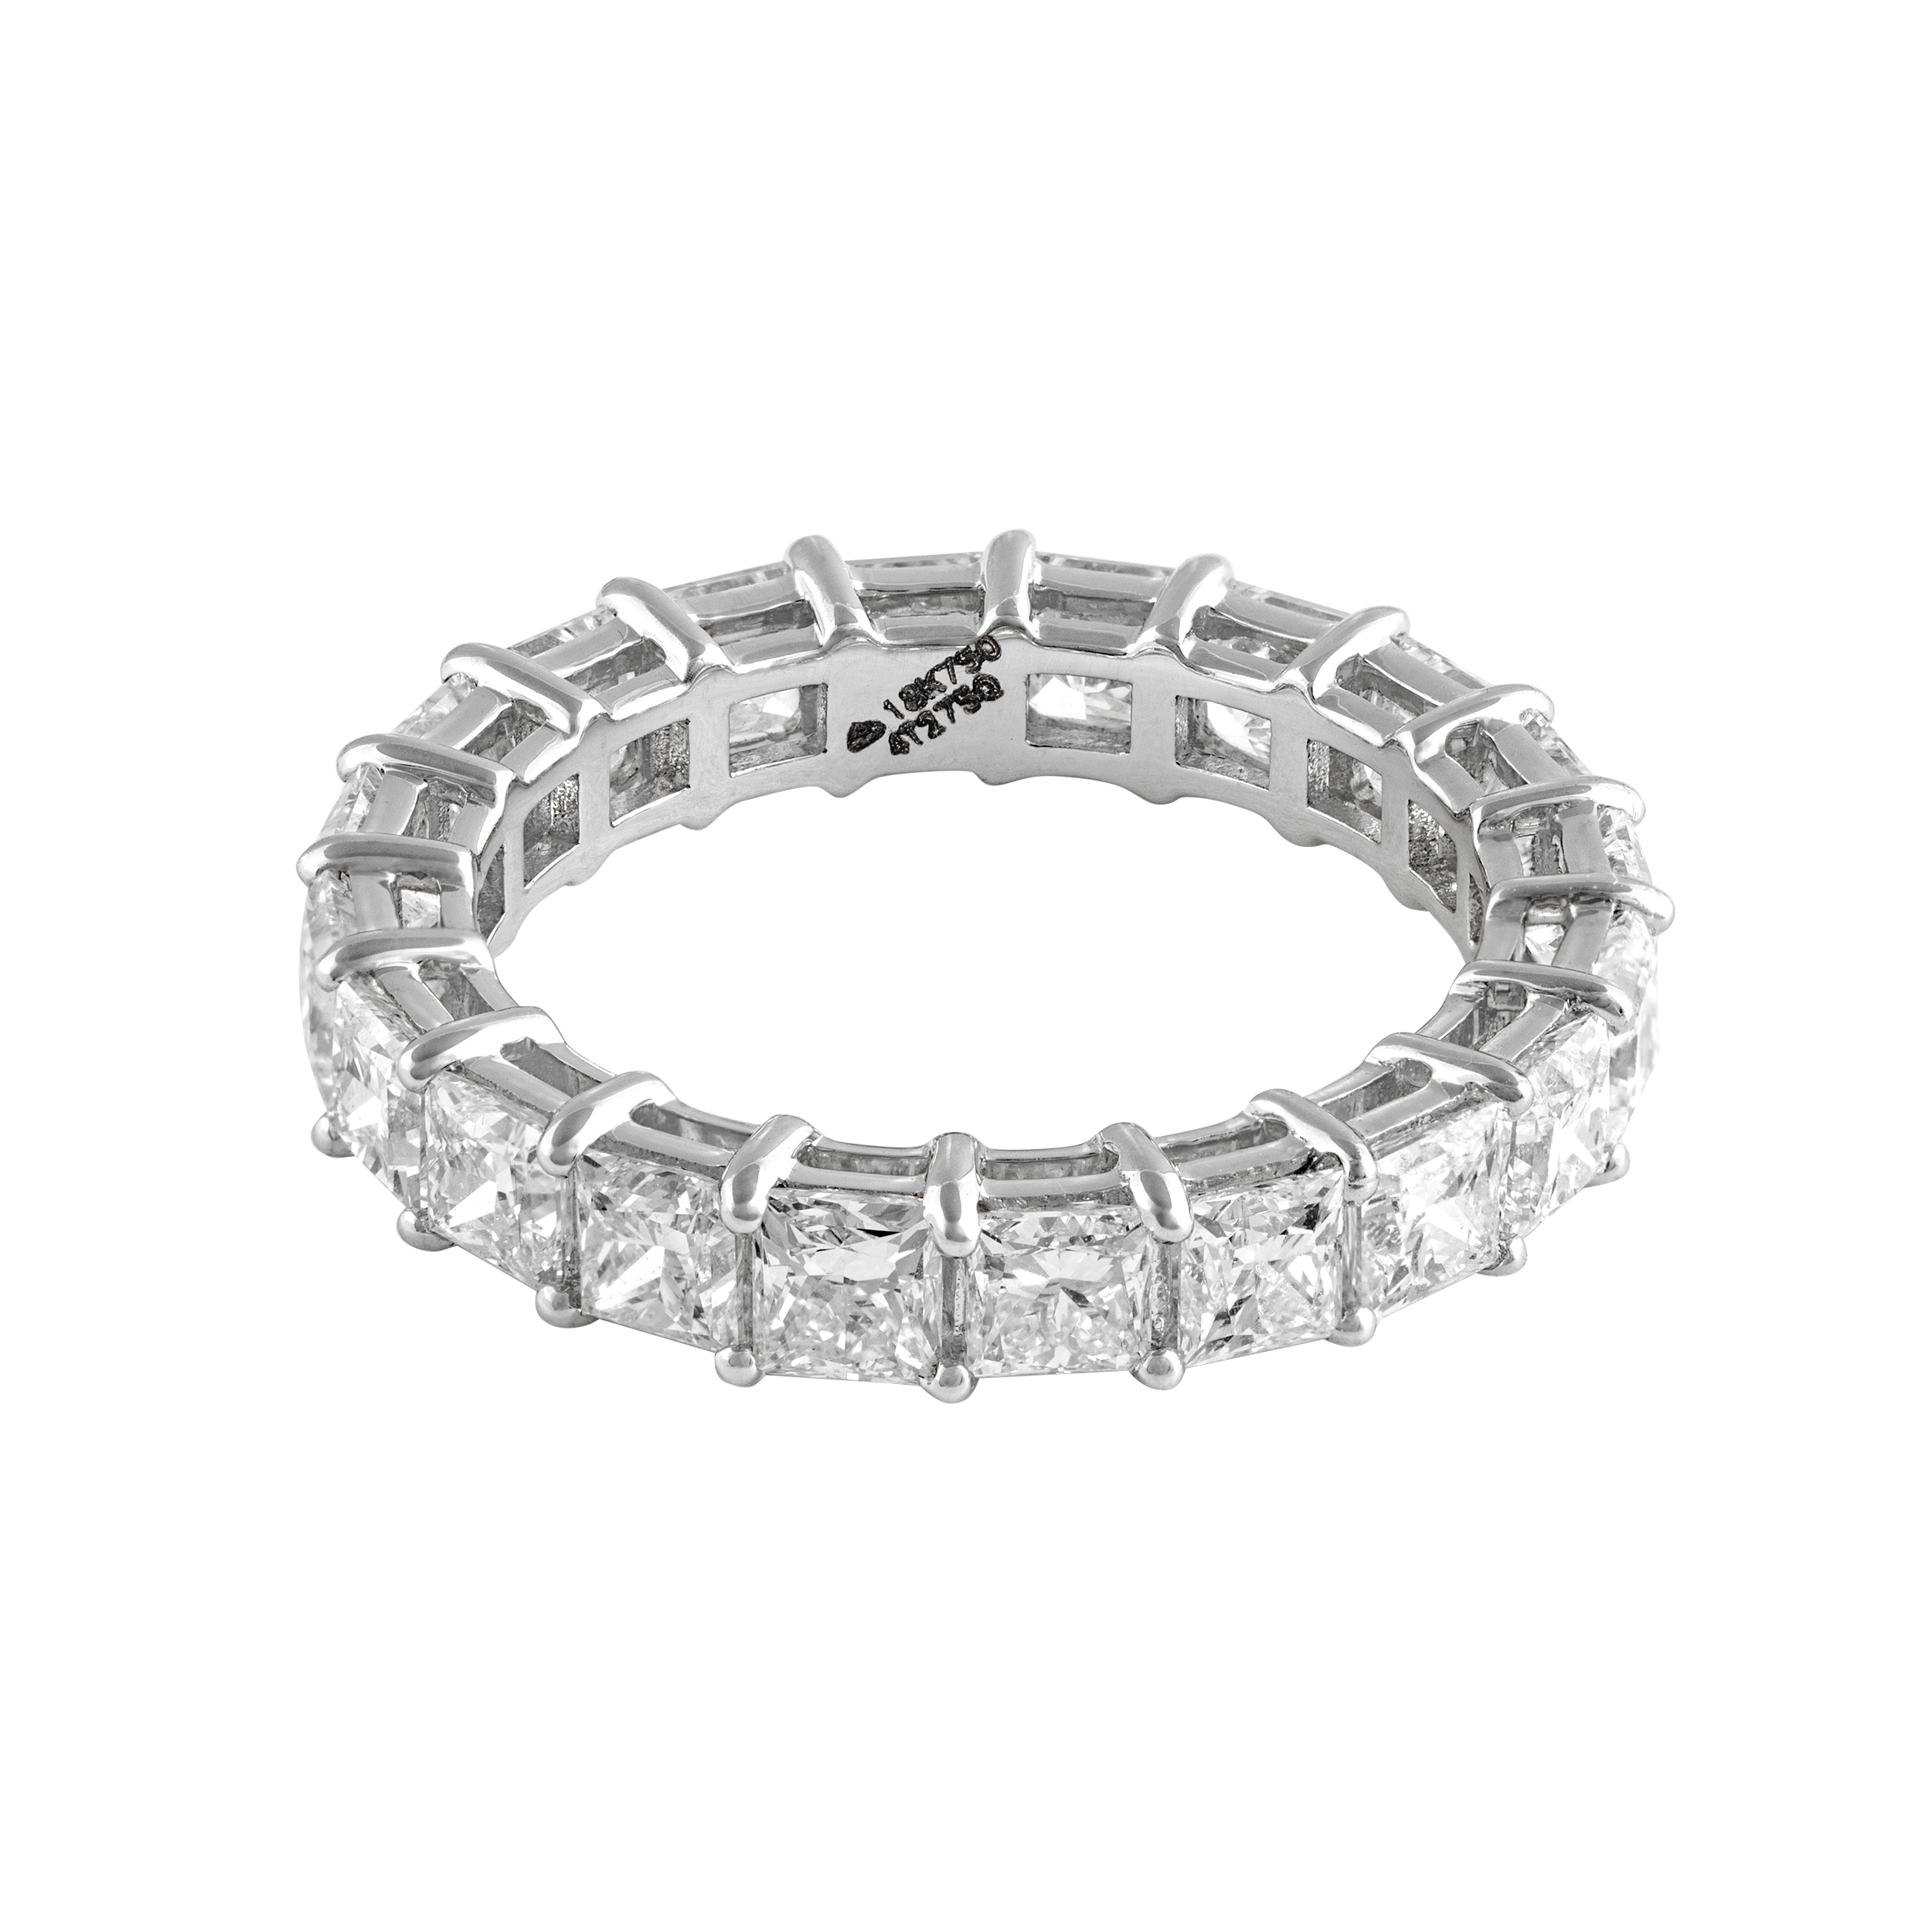 Laboratory Grown Diamond Ring | SKU : 0003179499